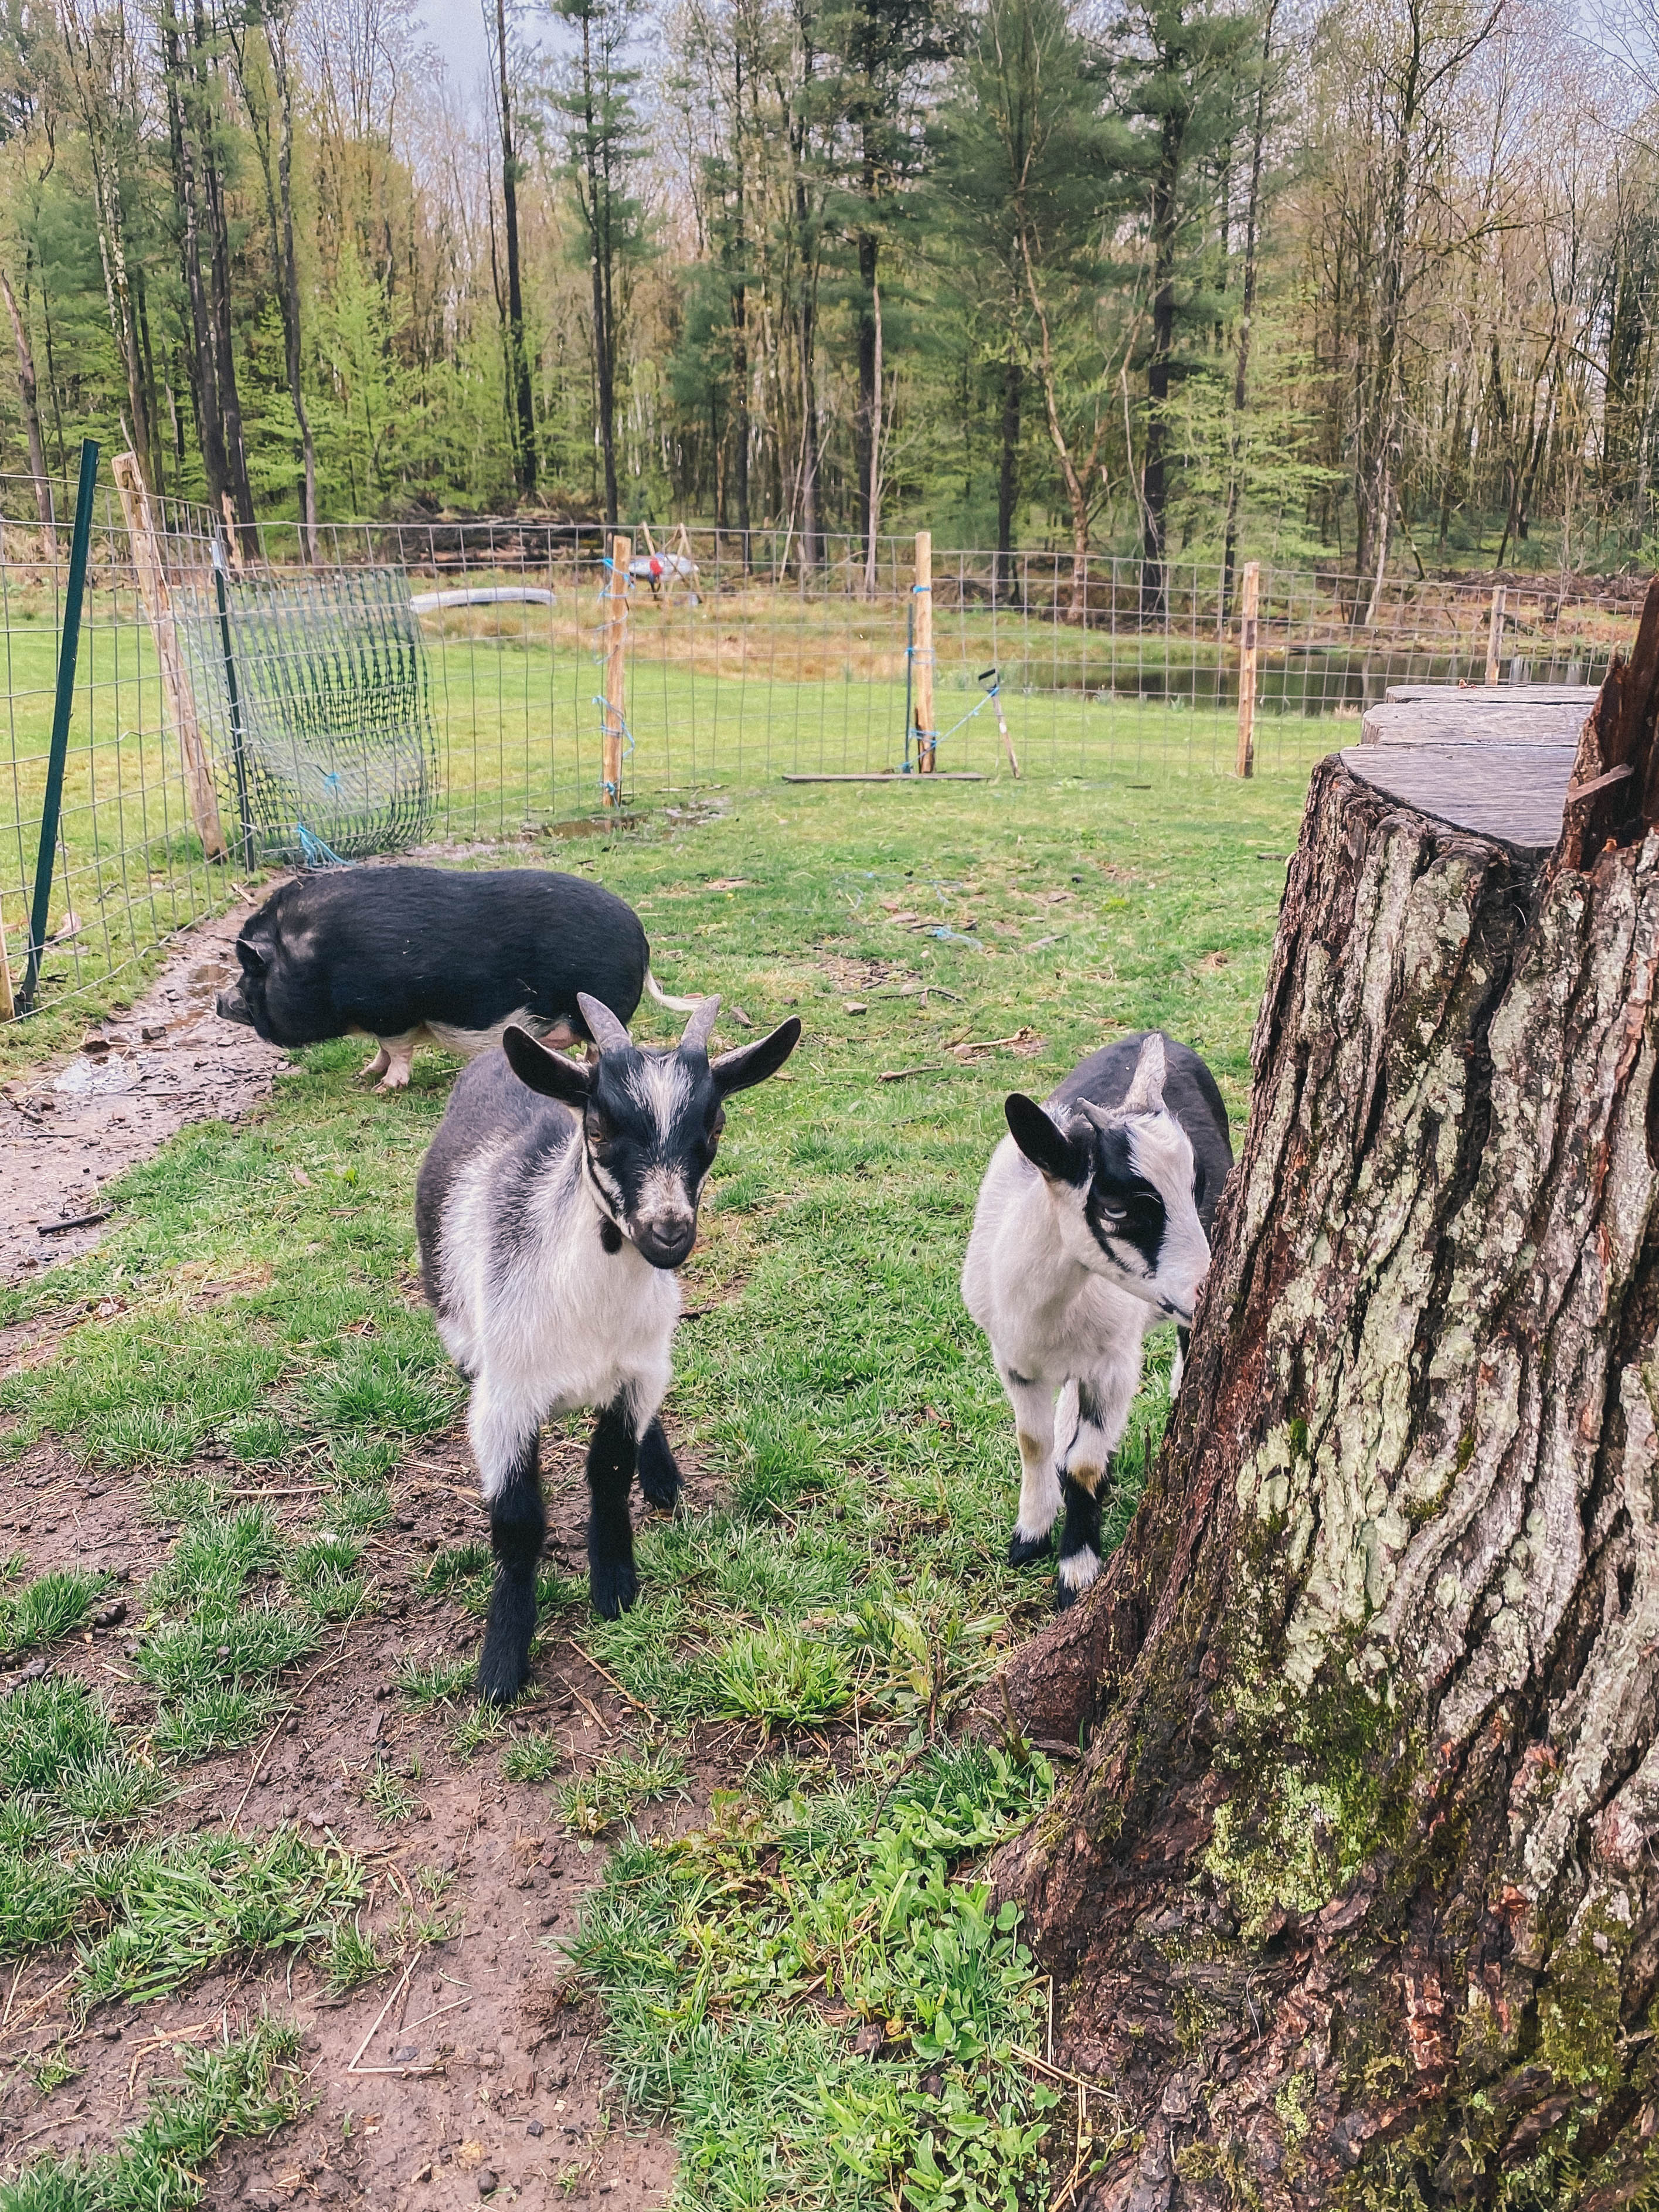 goats on a farm #farm #countrylife #goats